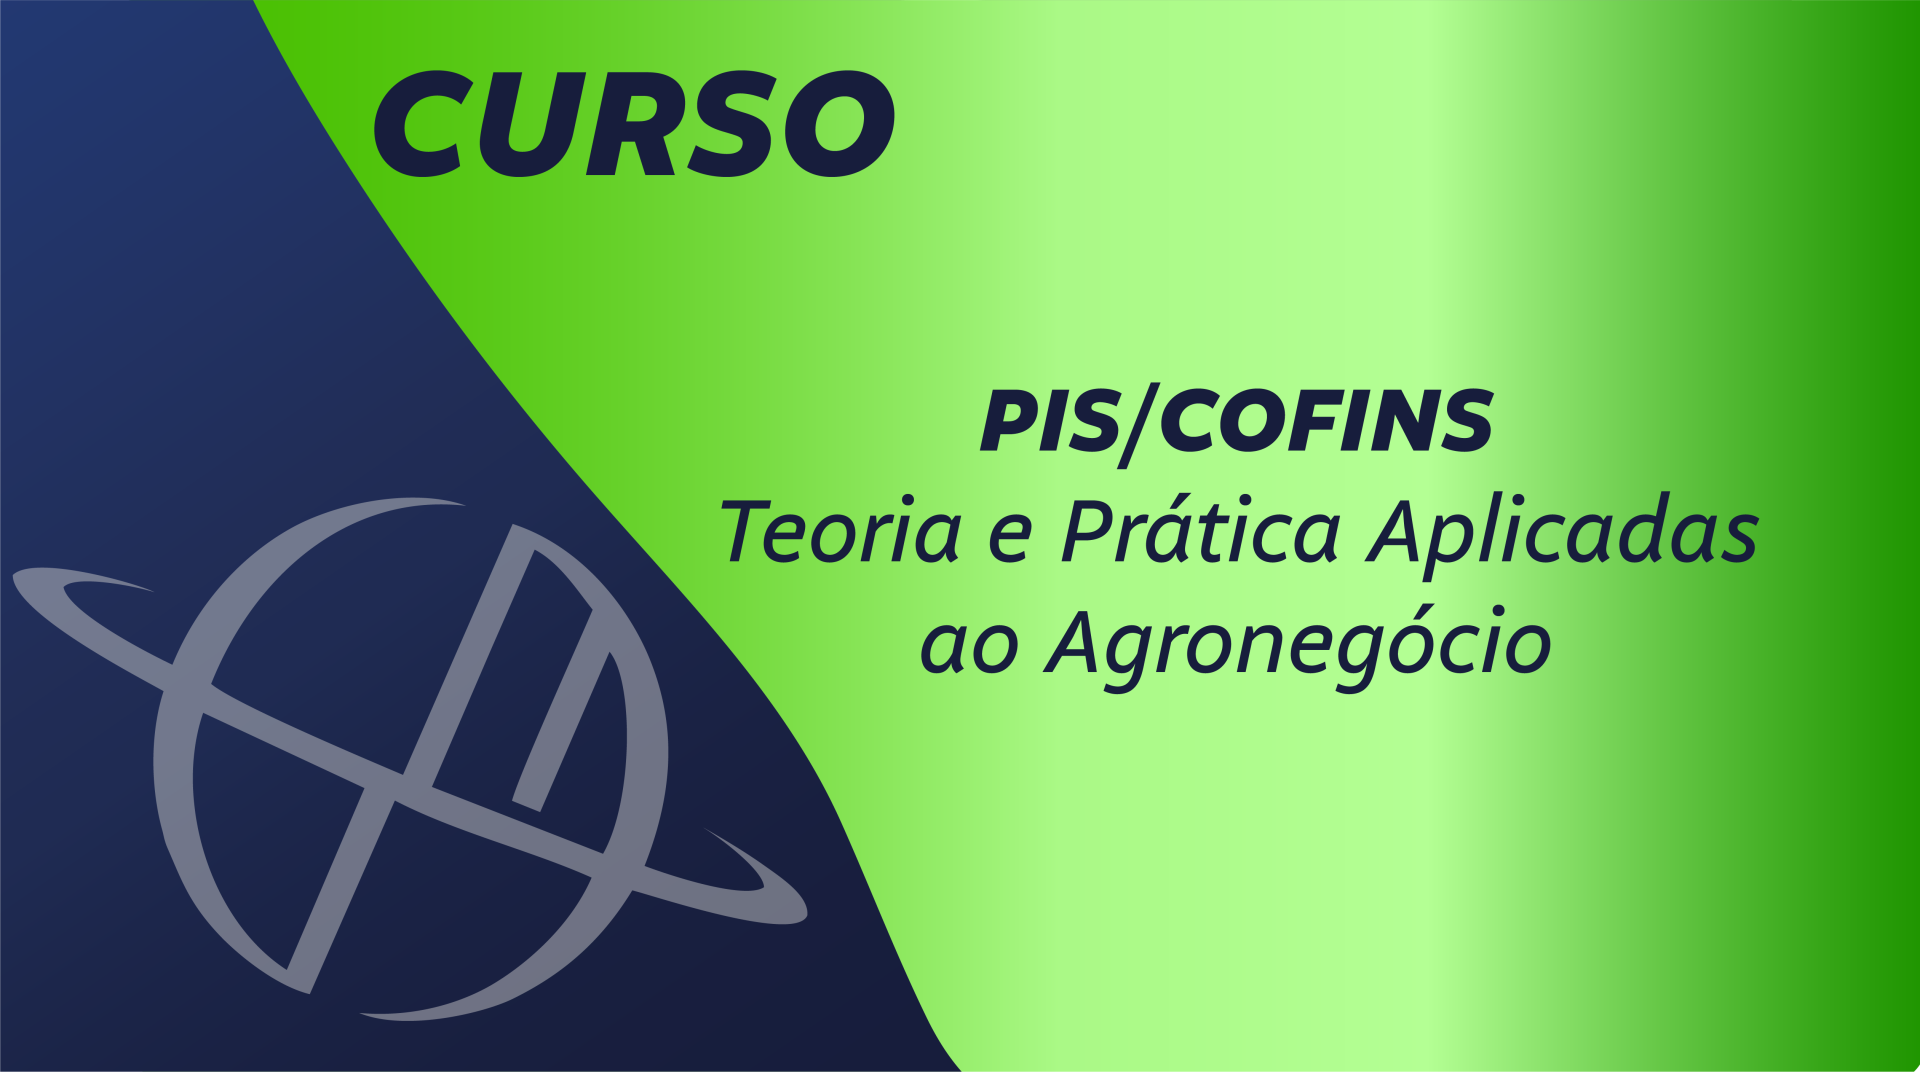 Contribuições para o PIS/COFINS: Teoria e Prática Aplicadas ao Agronegócio